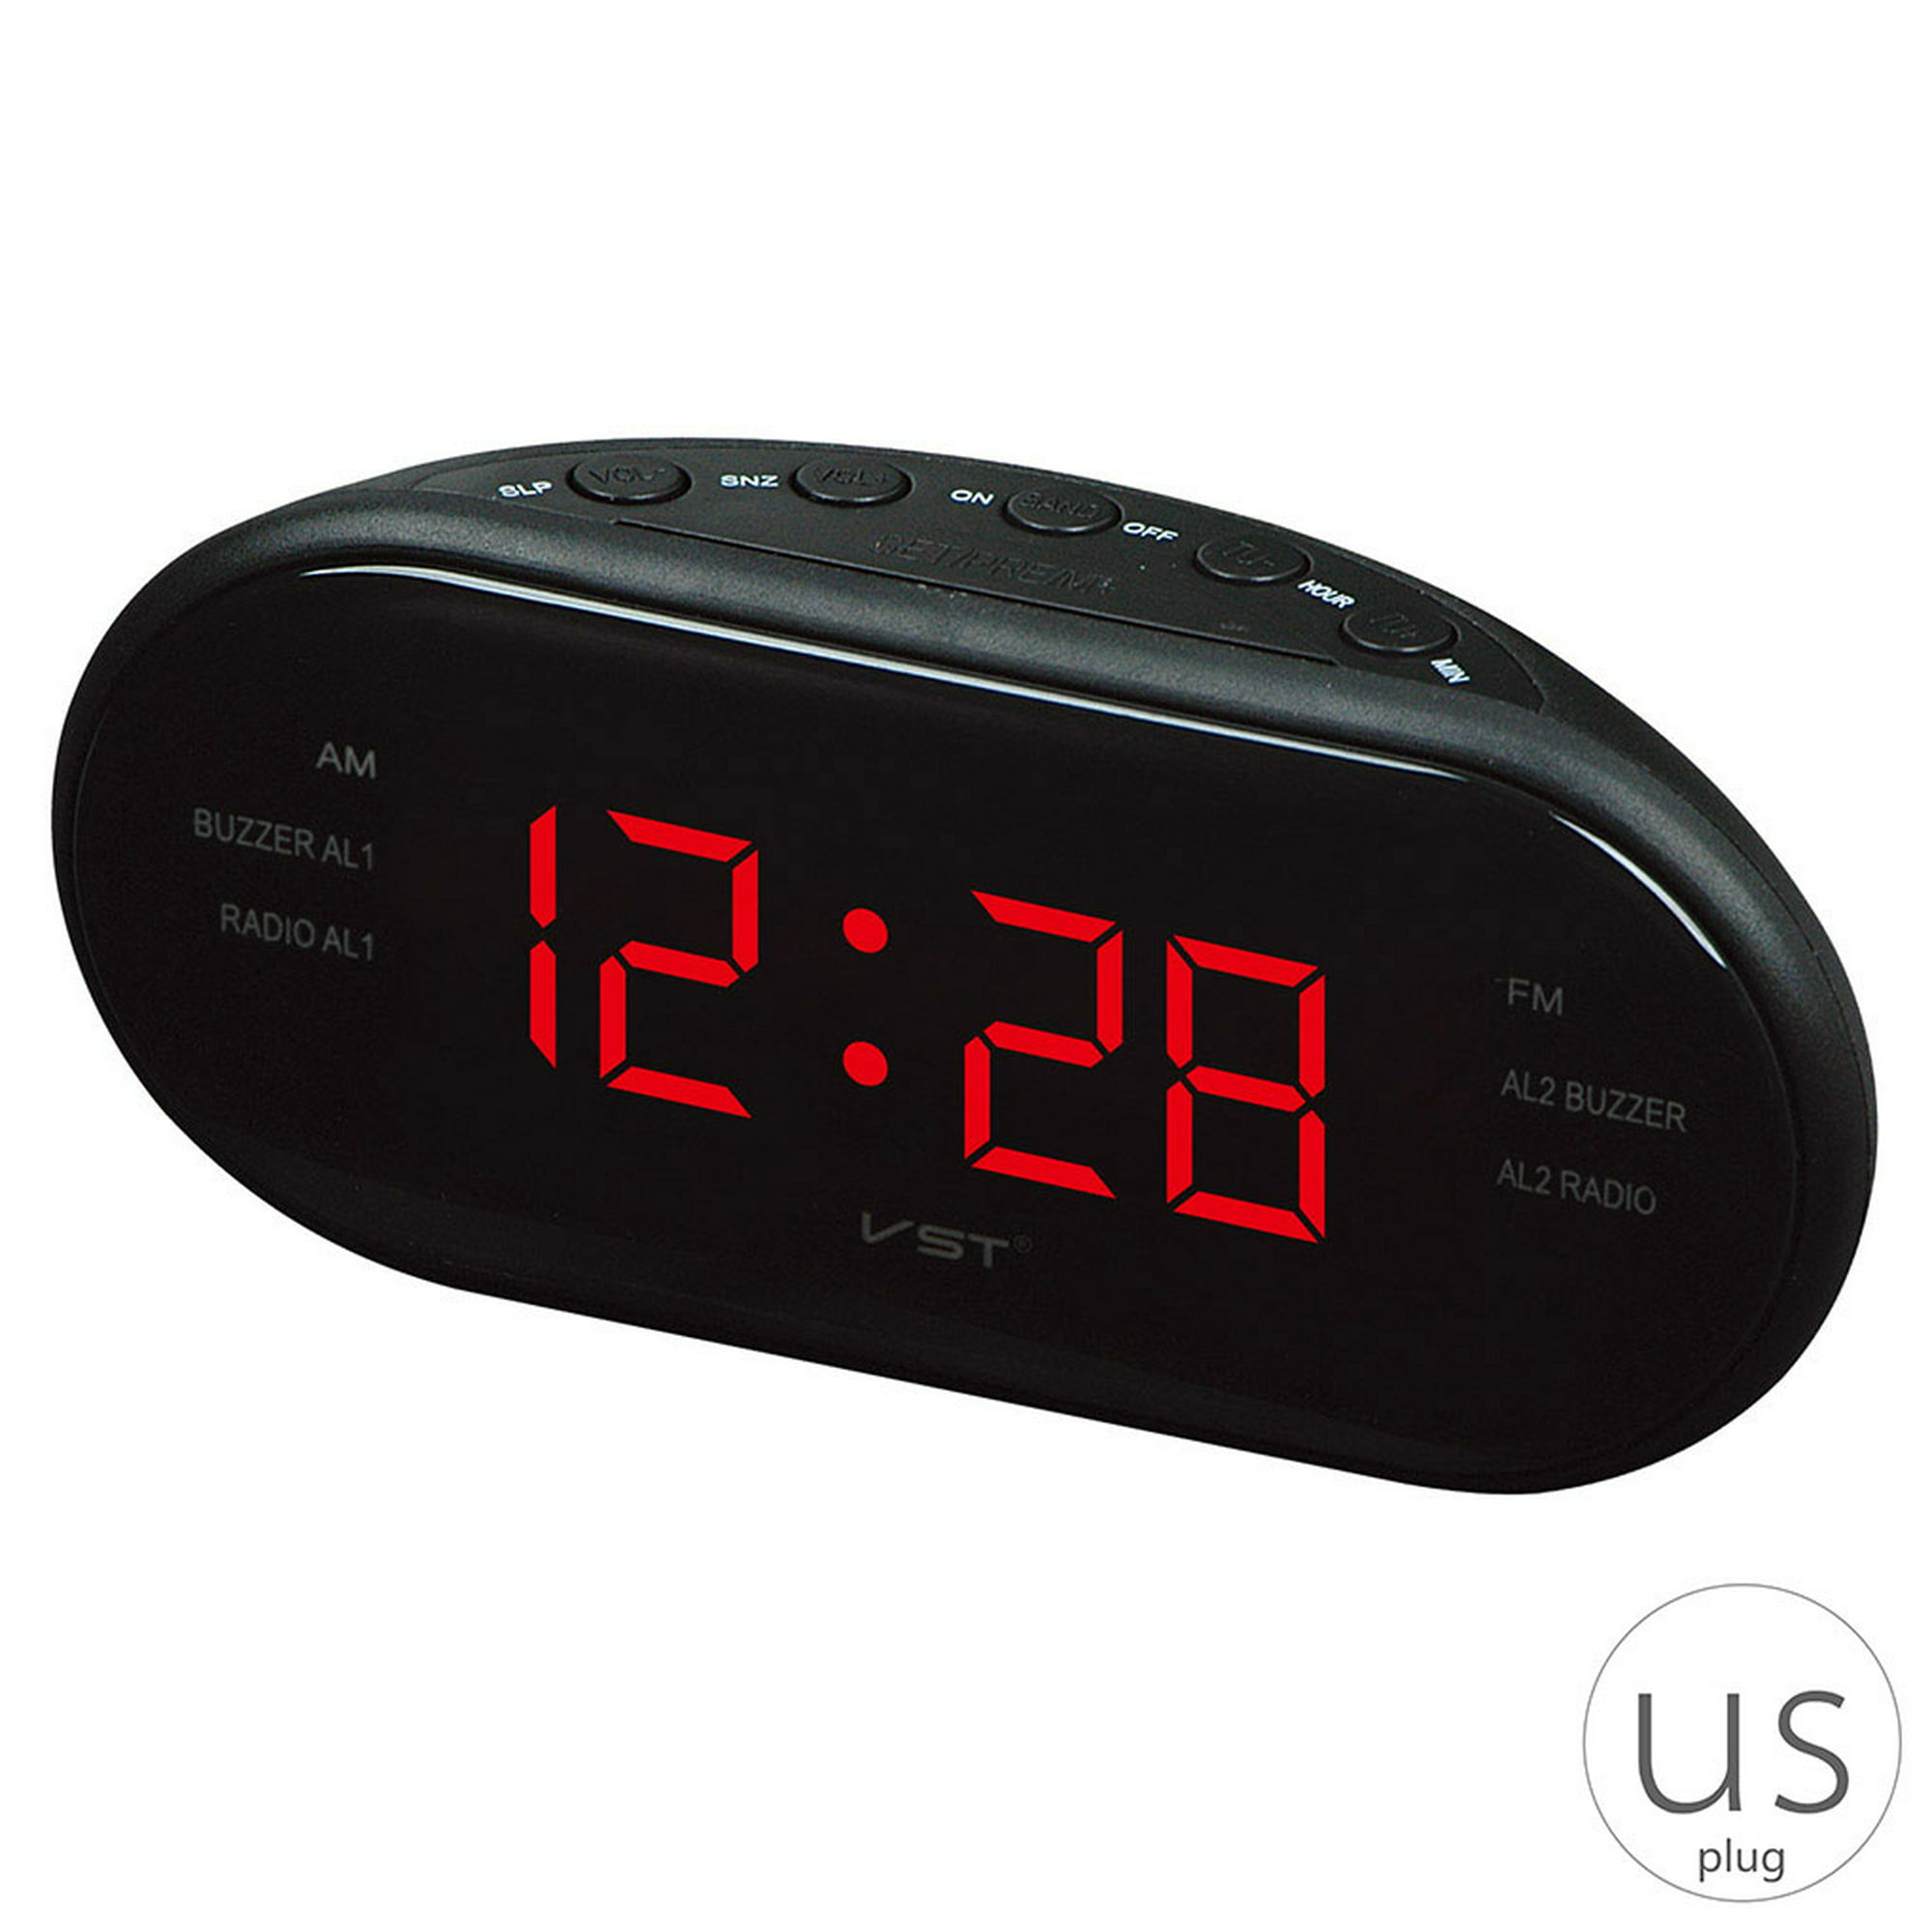 Reloj LED AM / FM Reloj despertador de escritorio electrónico Mesa digital  Radio Regalo Suministros de oficina en casa Enchufe de EE. UU. Inevent  JJ24937-05B